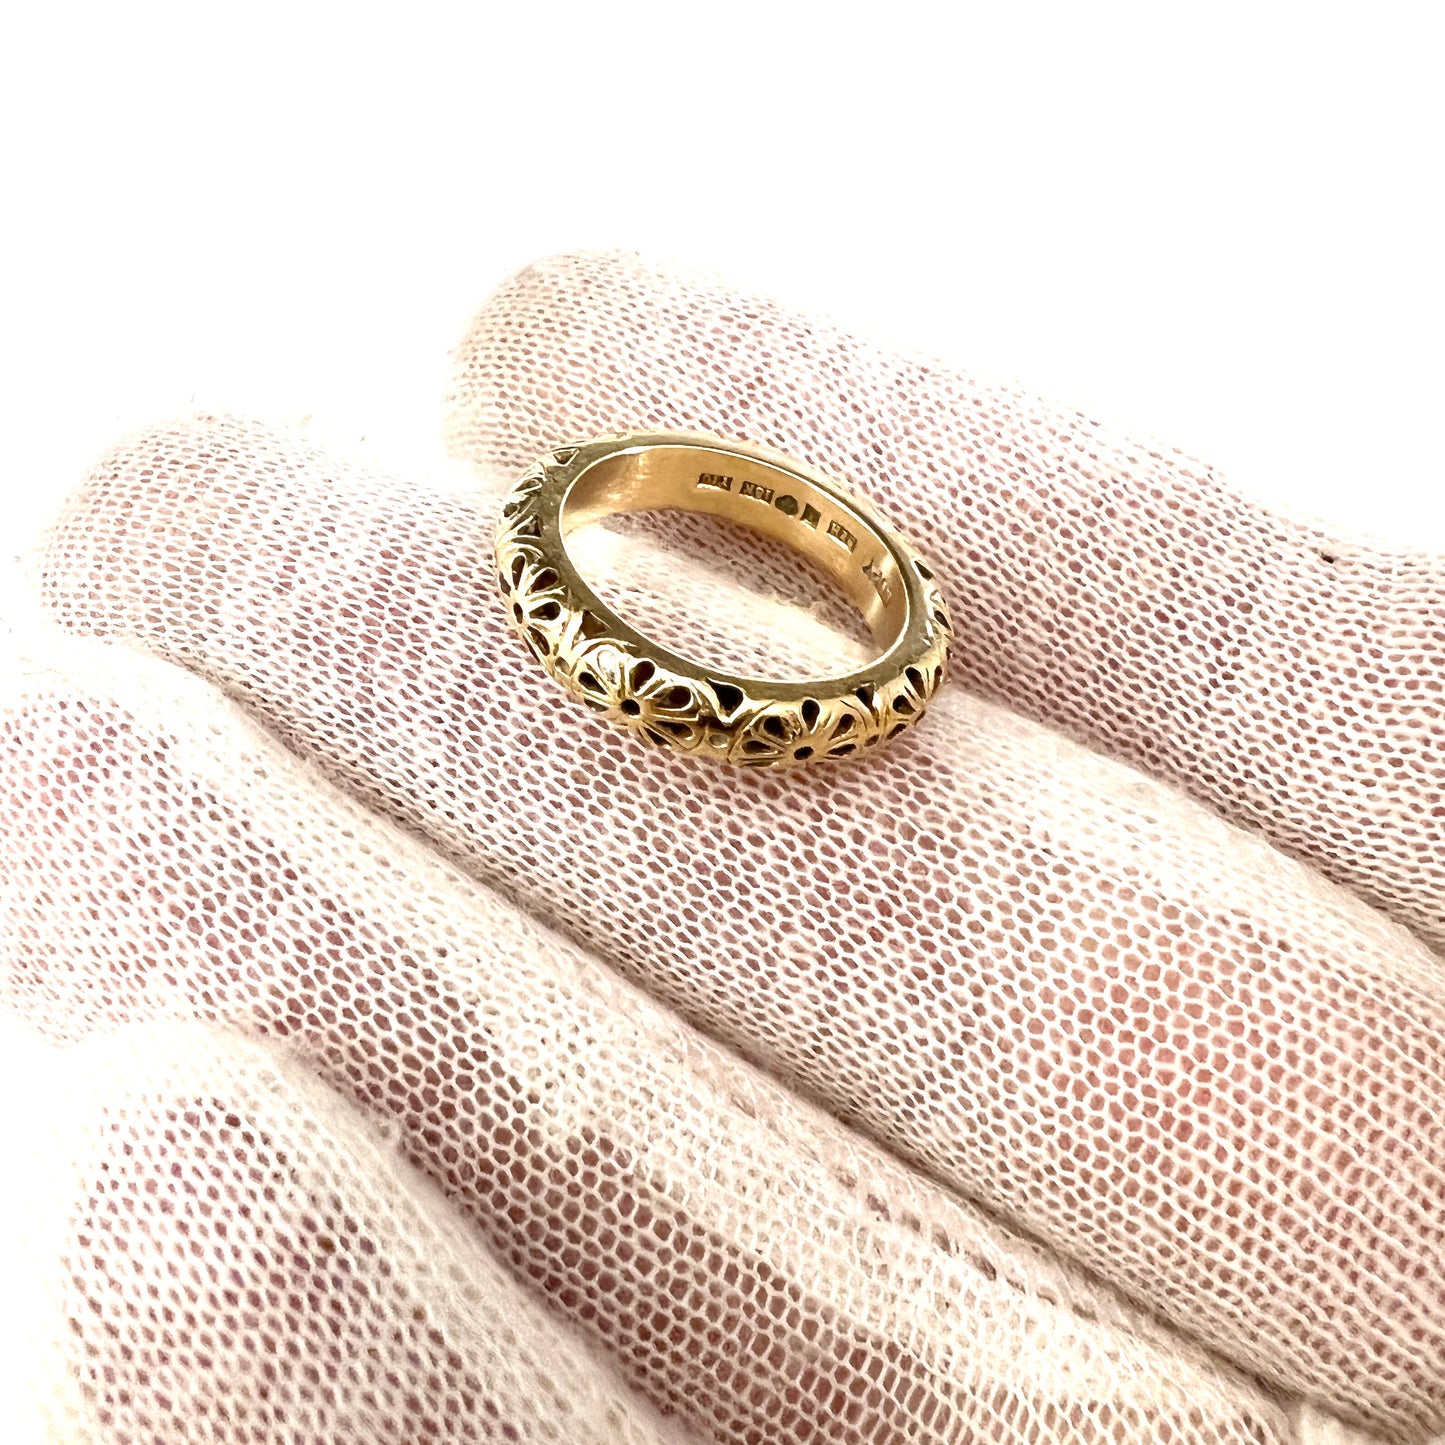 Bengt Hallberg, Sweden. Vintage Medieval Copy 18k Gold Ring. Original from 1537 A.D.